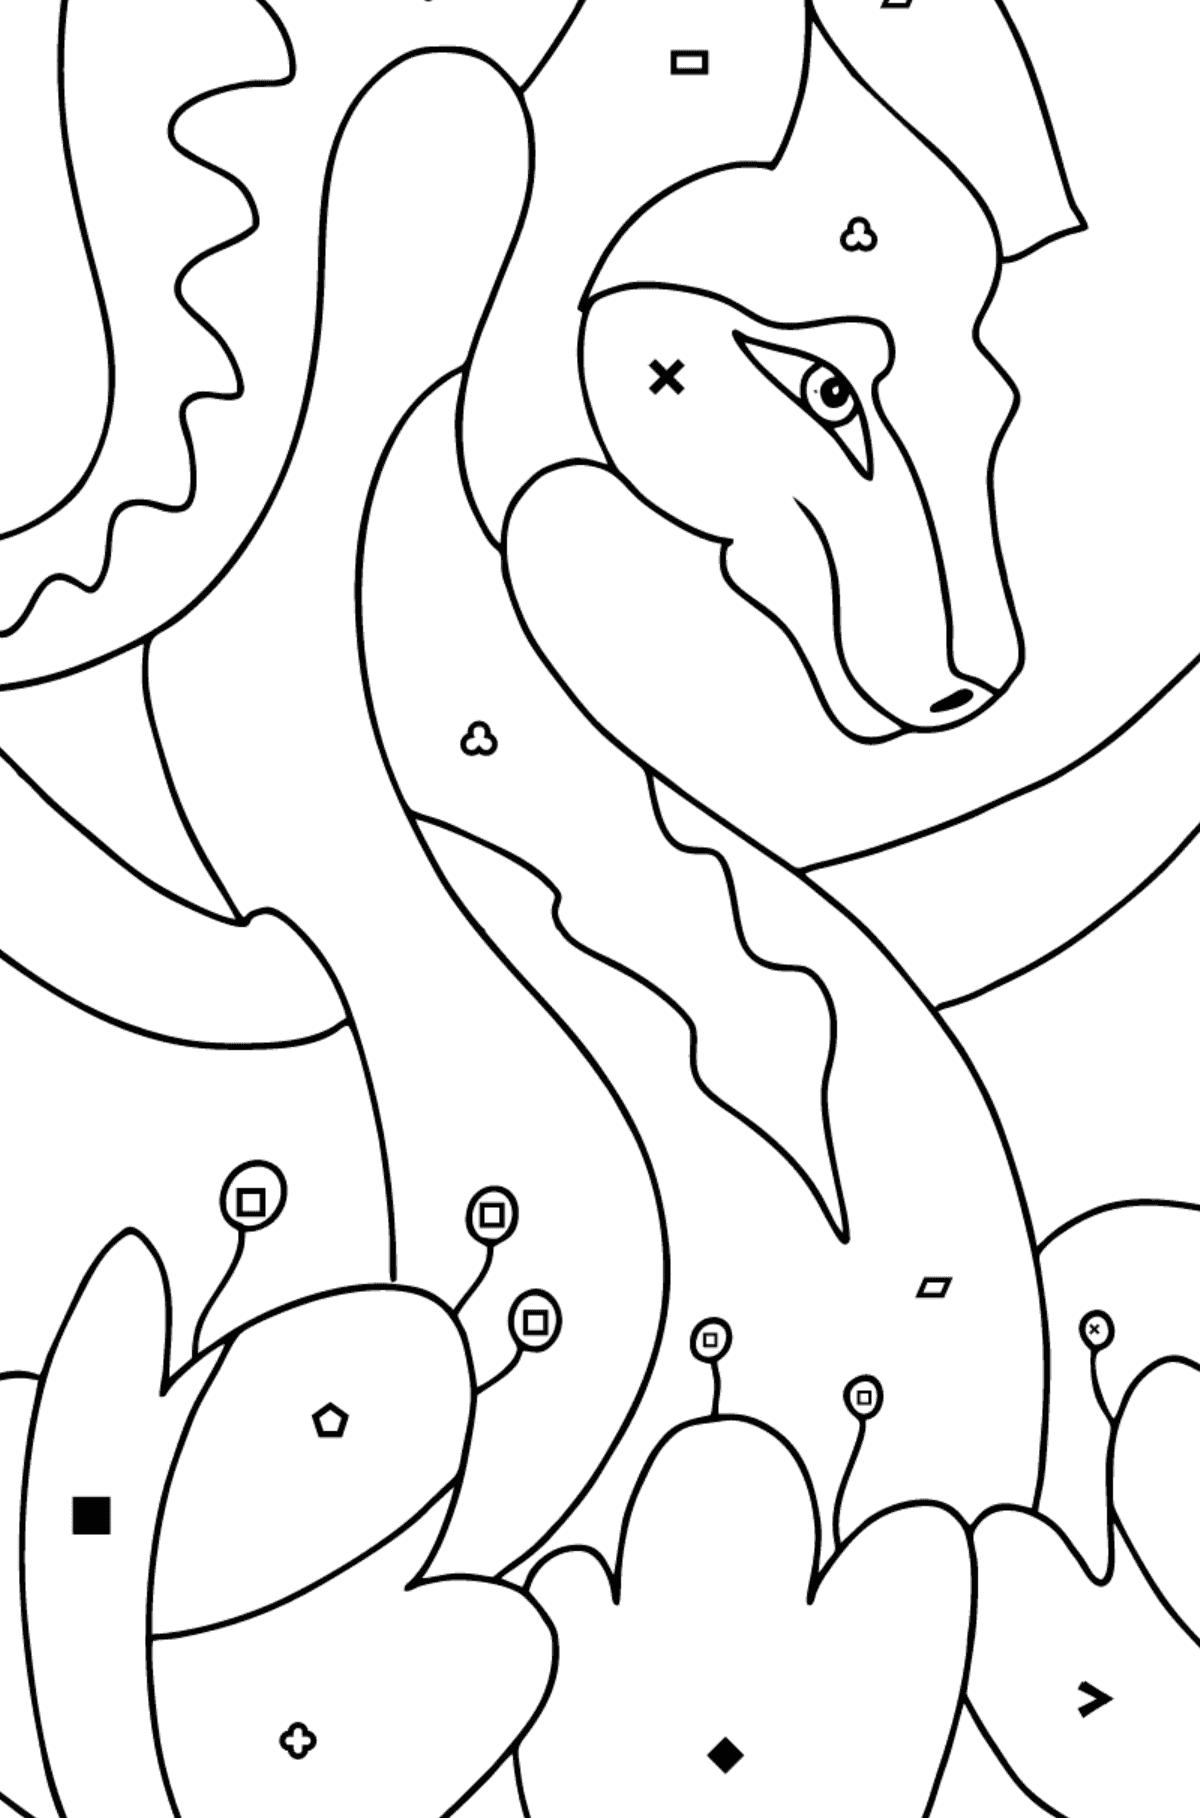 Dibujo para colorear dragón colorido (difícil) - Colorear por Símbolos para Niños